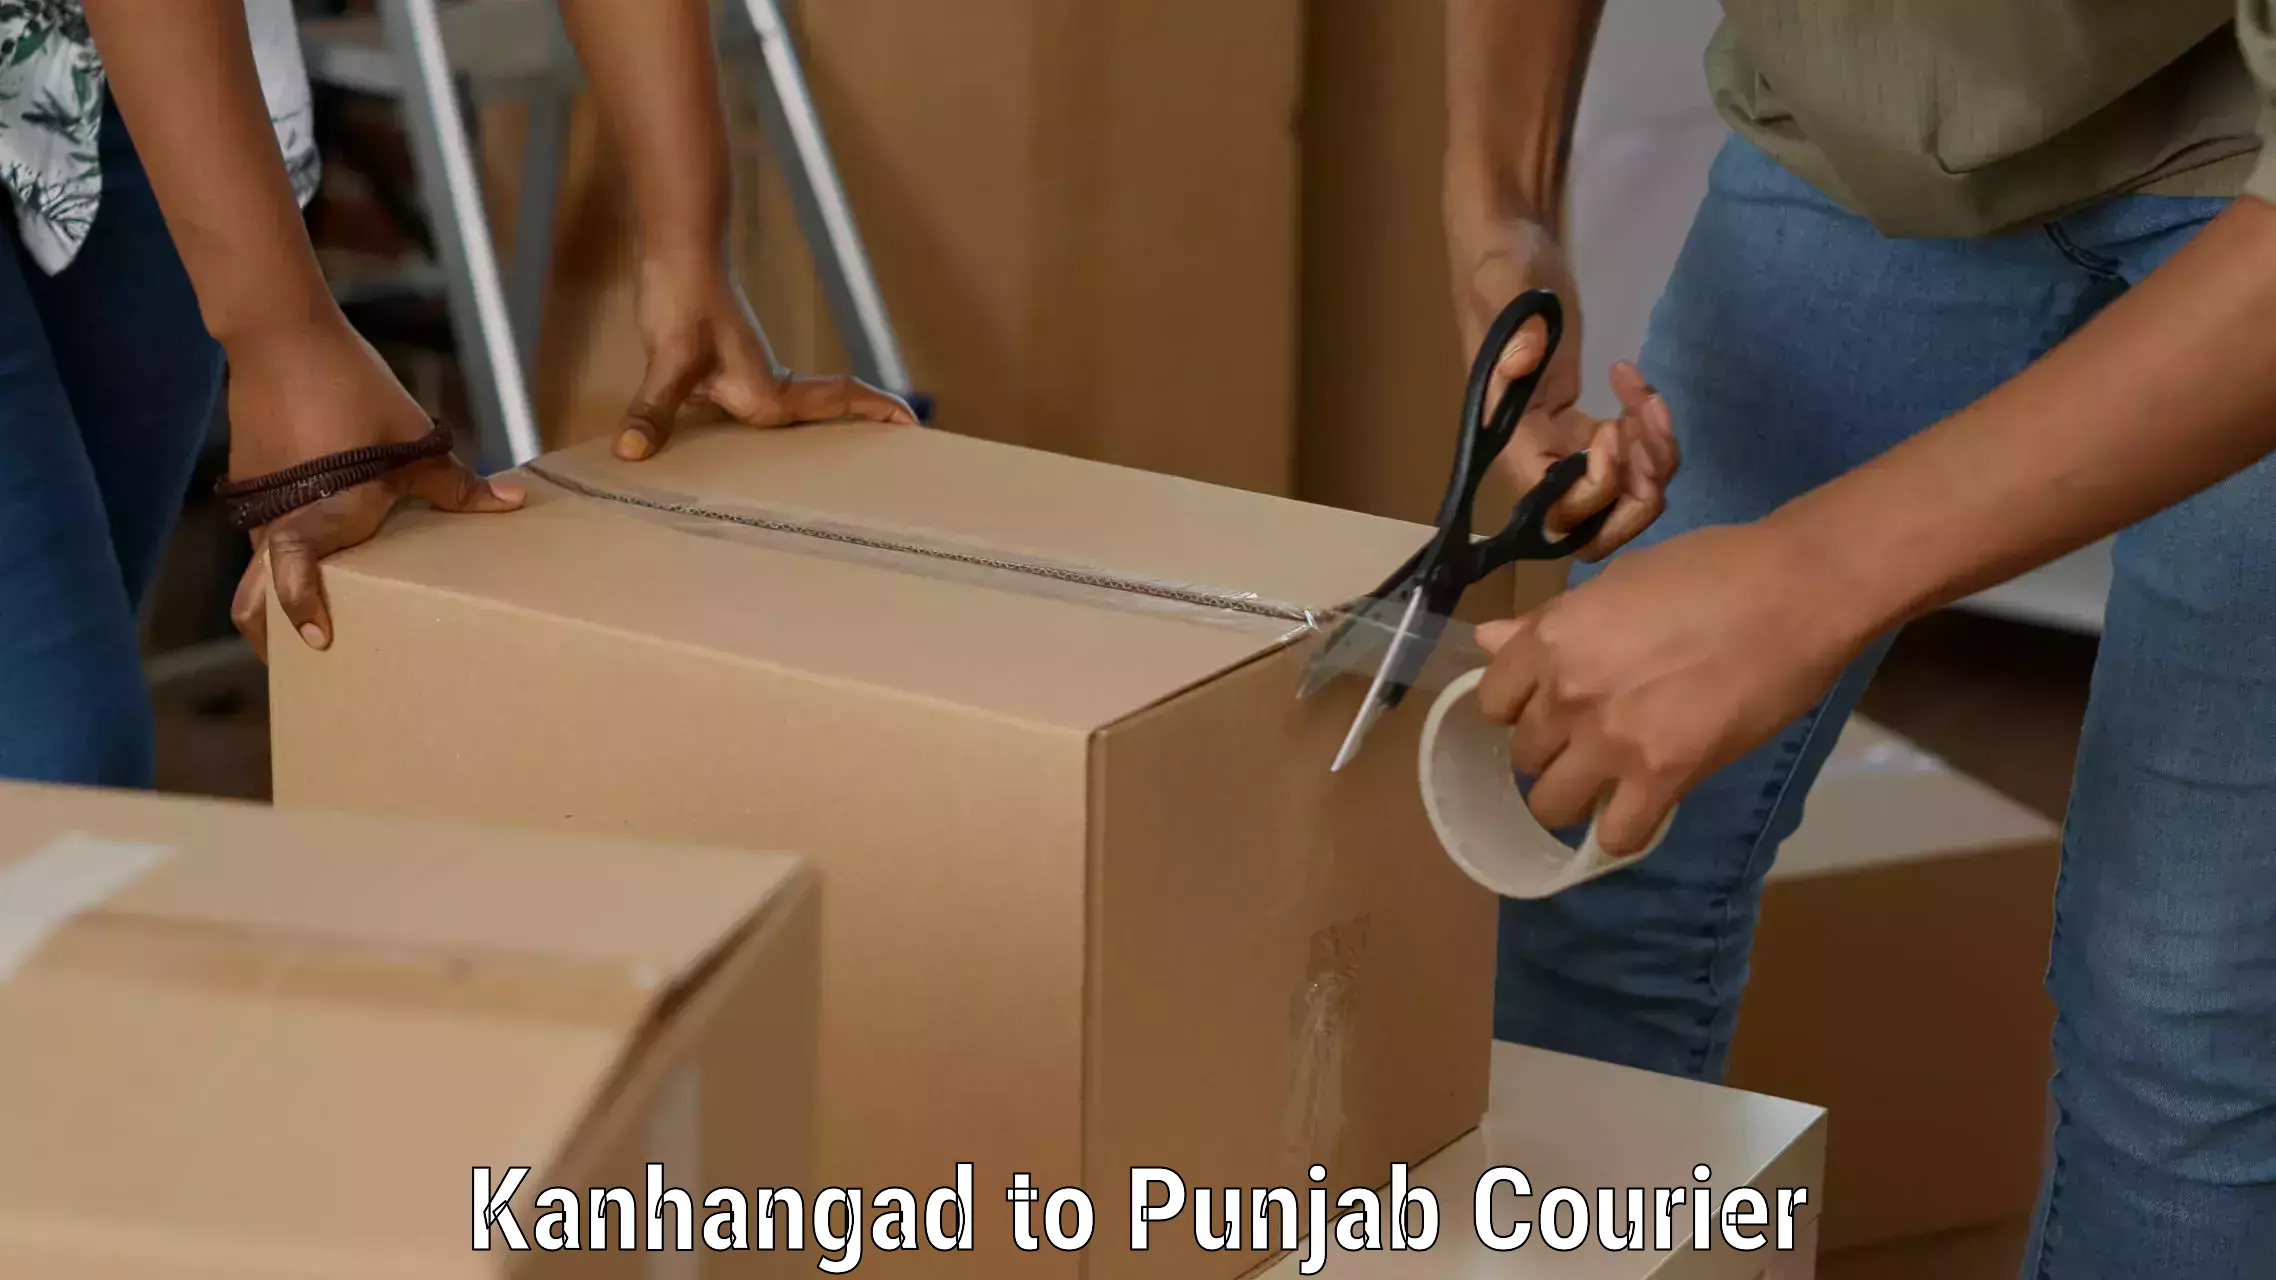 Return courier service Kanhangad to Punjab